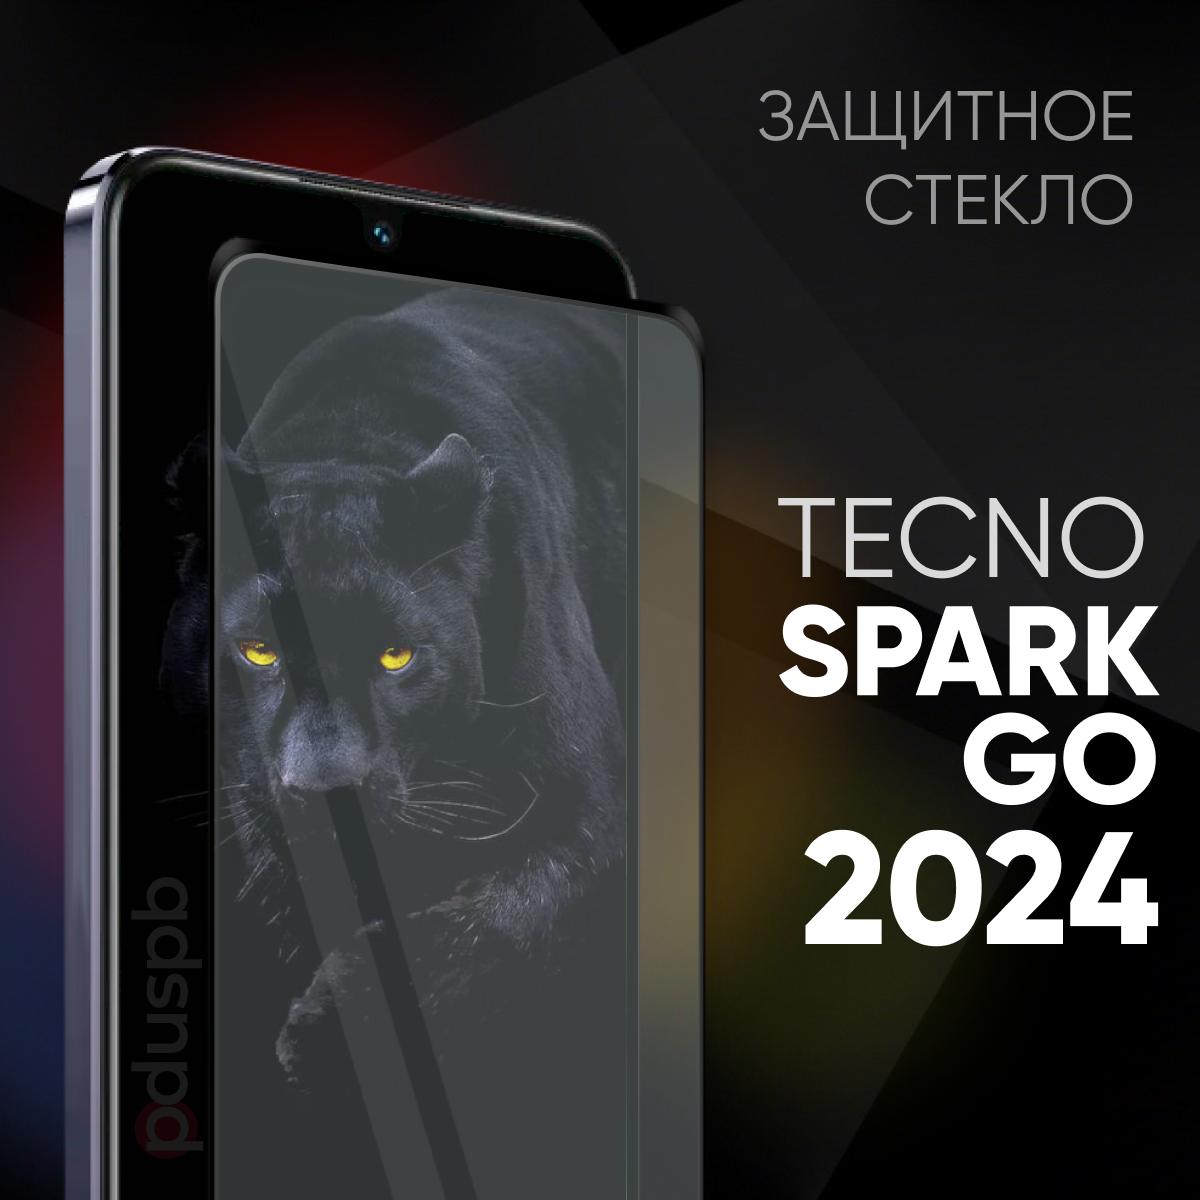 Стекло для Tecno spark go 2024 / Защитное закаленное стекло для Техно спарк гоу 2024